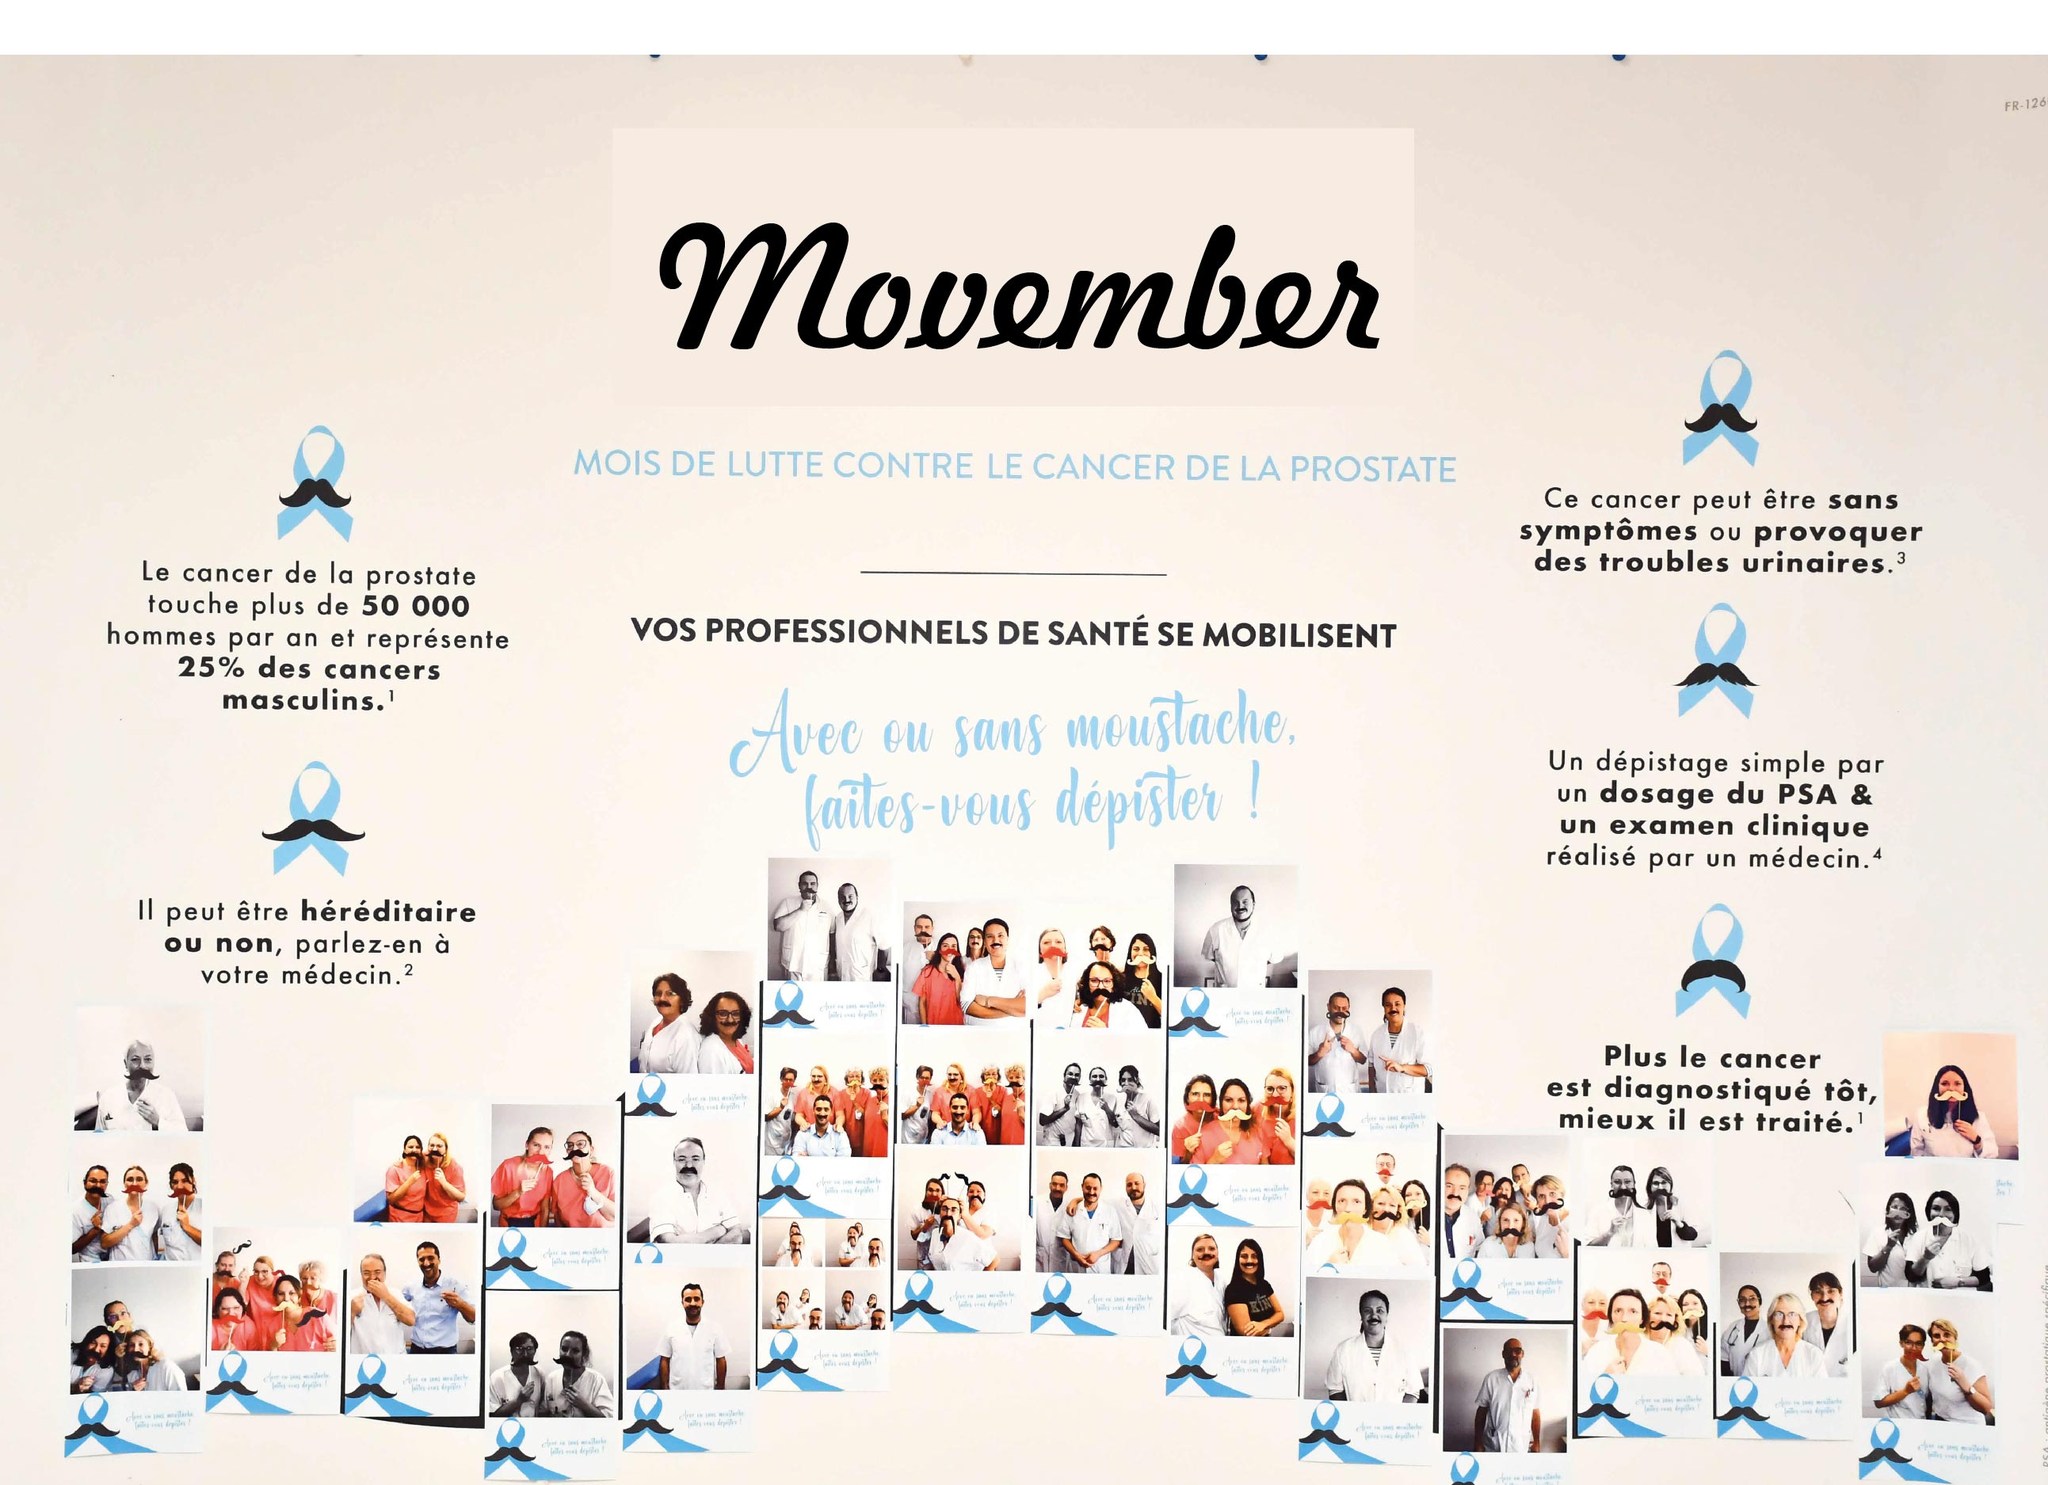 MOVEMBER : Le mois de novembre est aussi le mois de lutte contre le cancer de la prostate